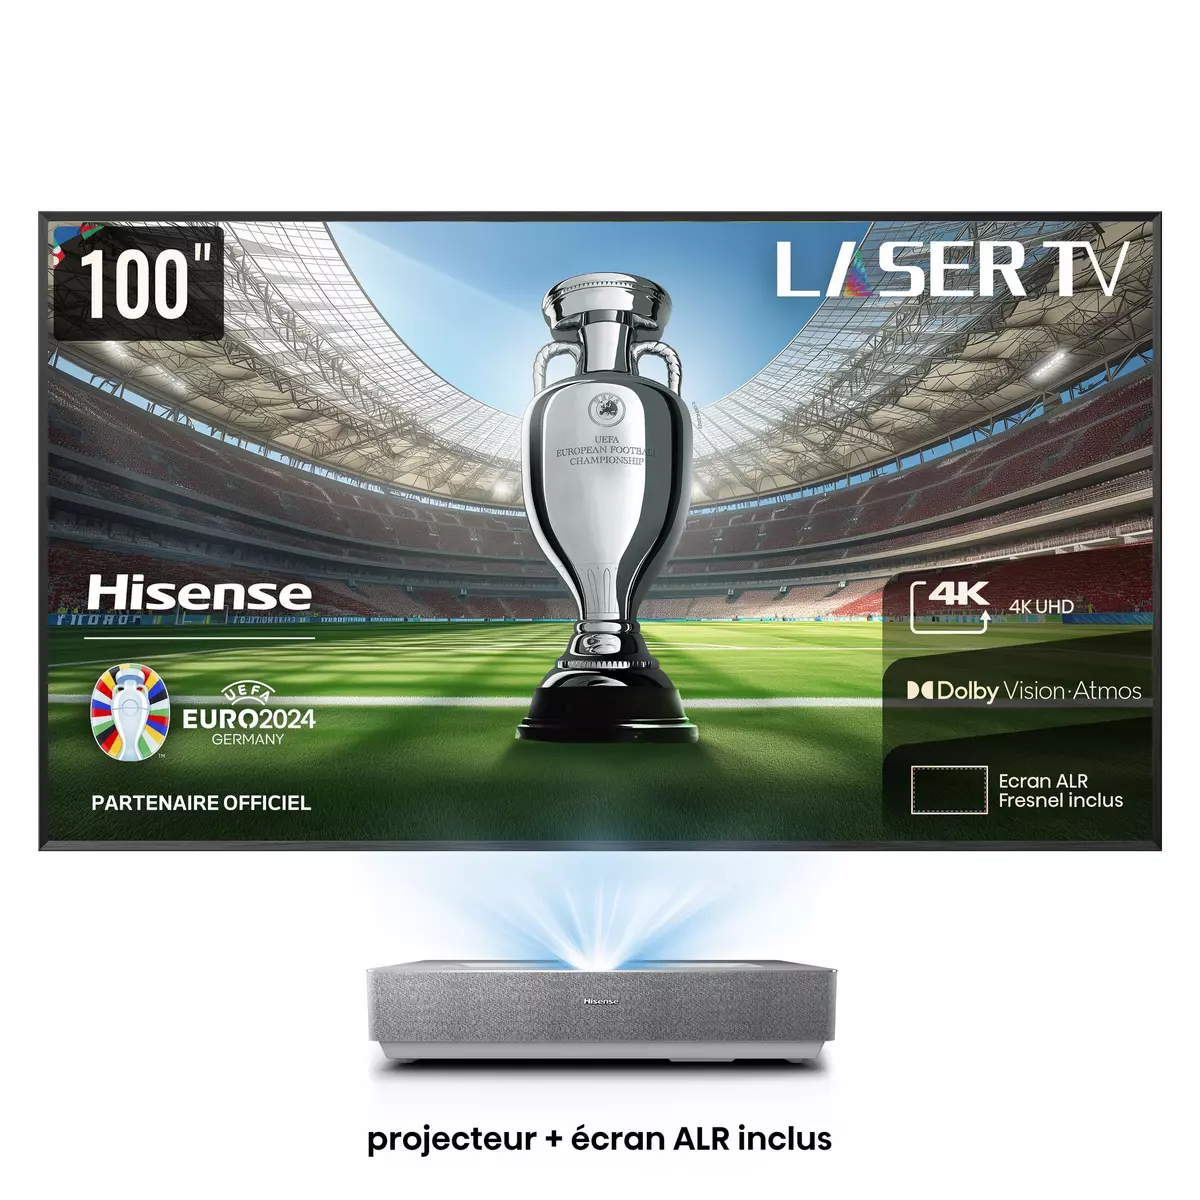 HISENSE Pack Vidéo projecteur Laser TV 100L5HD 4K UHD - Console Ultra courte focale + écran ALR Fresnel 100 pouces